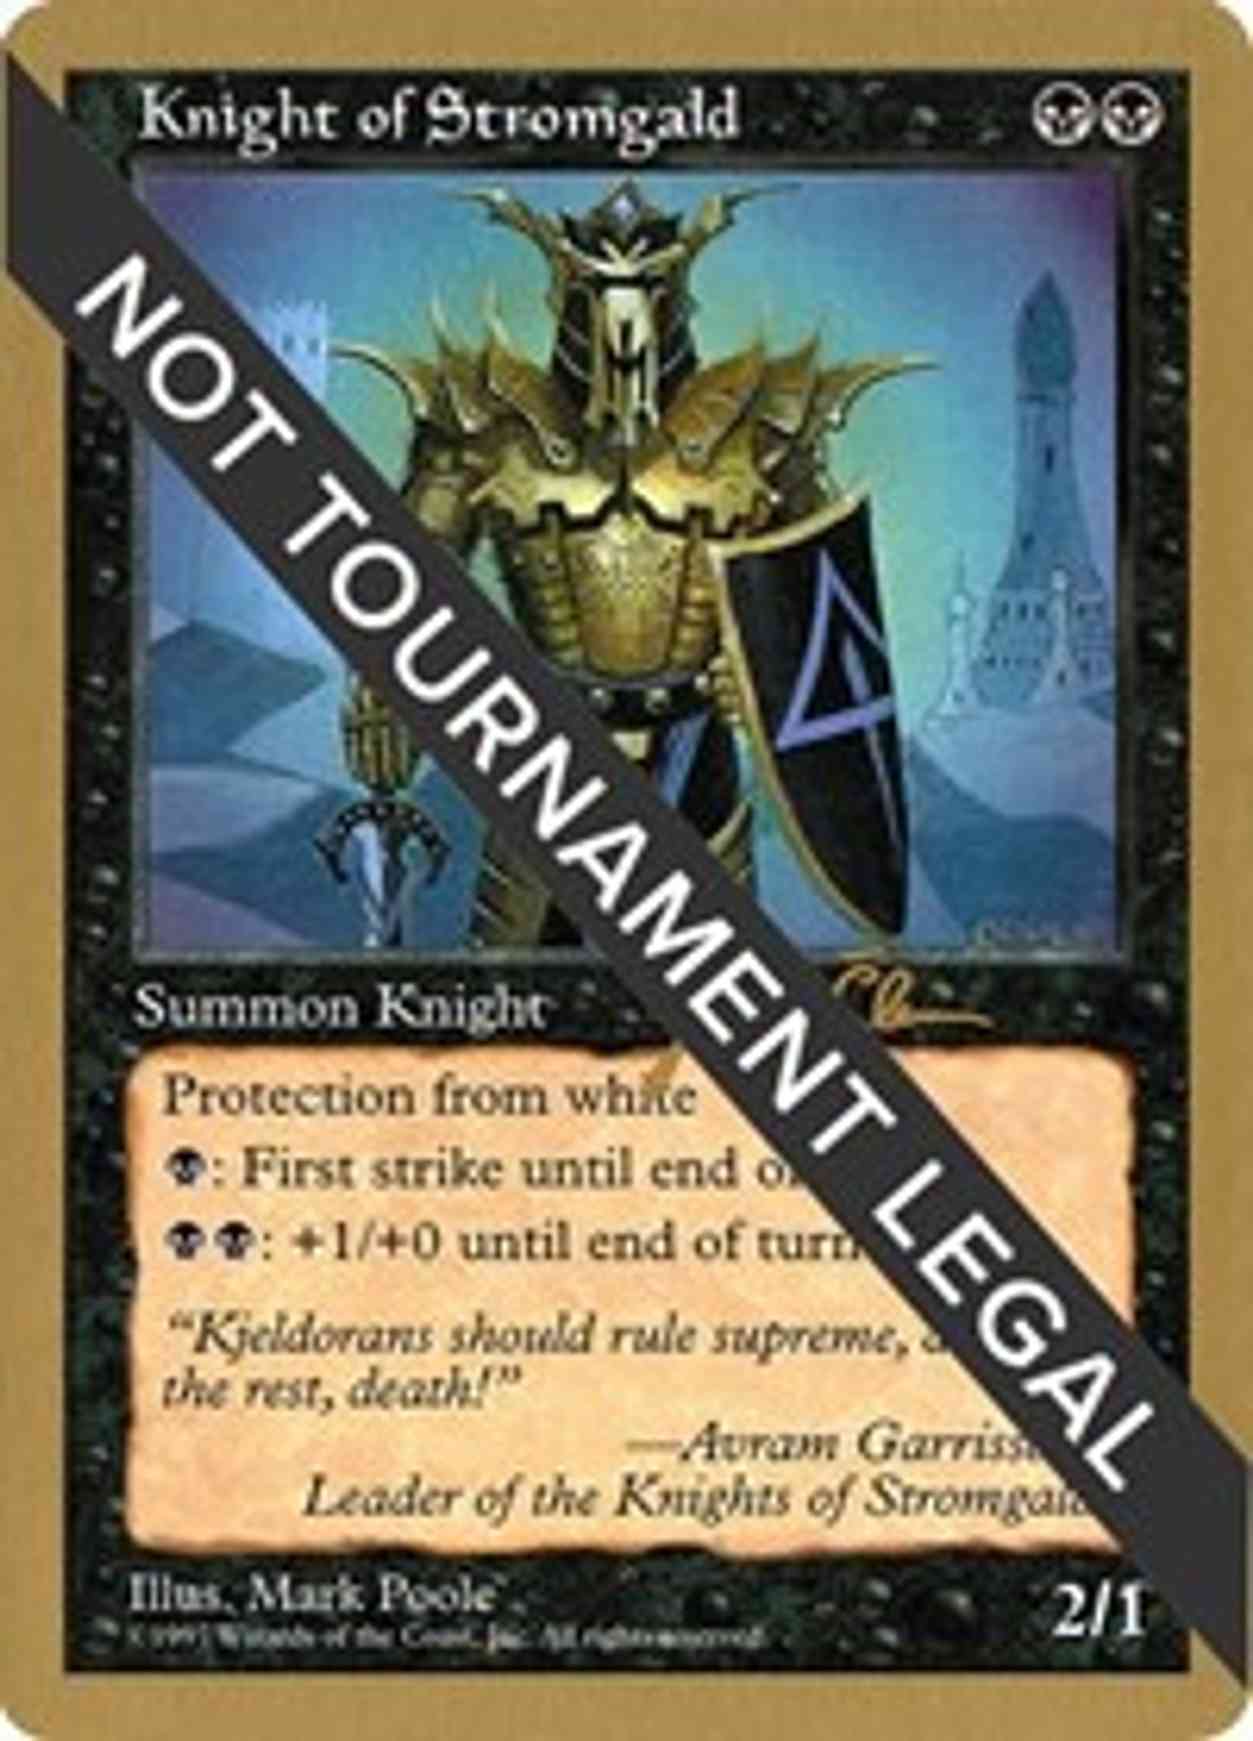 Knight of Stromgald - 1997 Jakub Slemr (5ED) magic card front